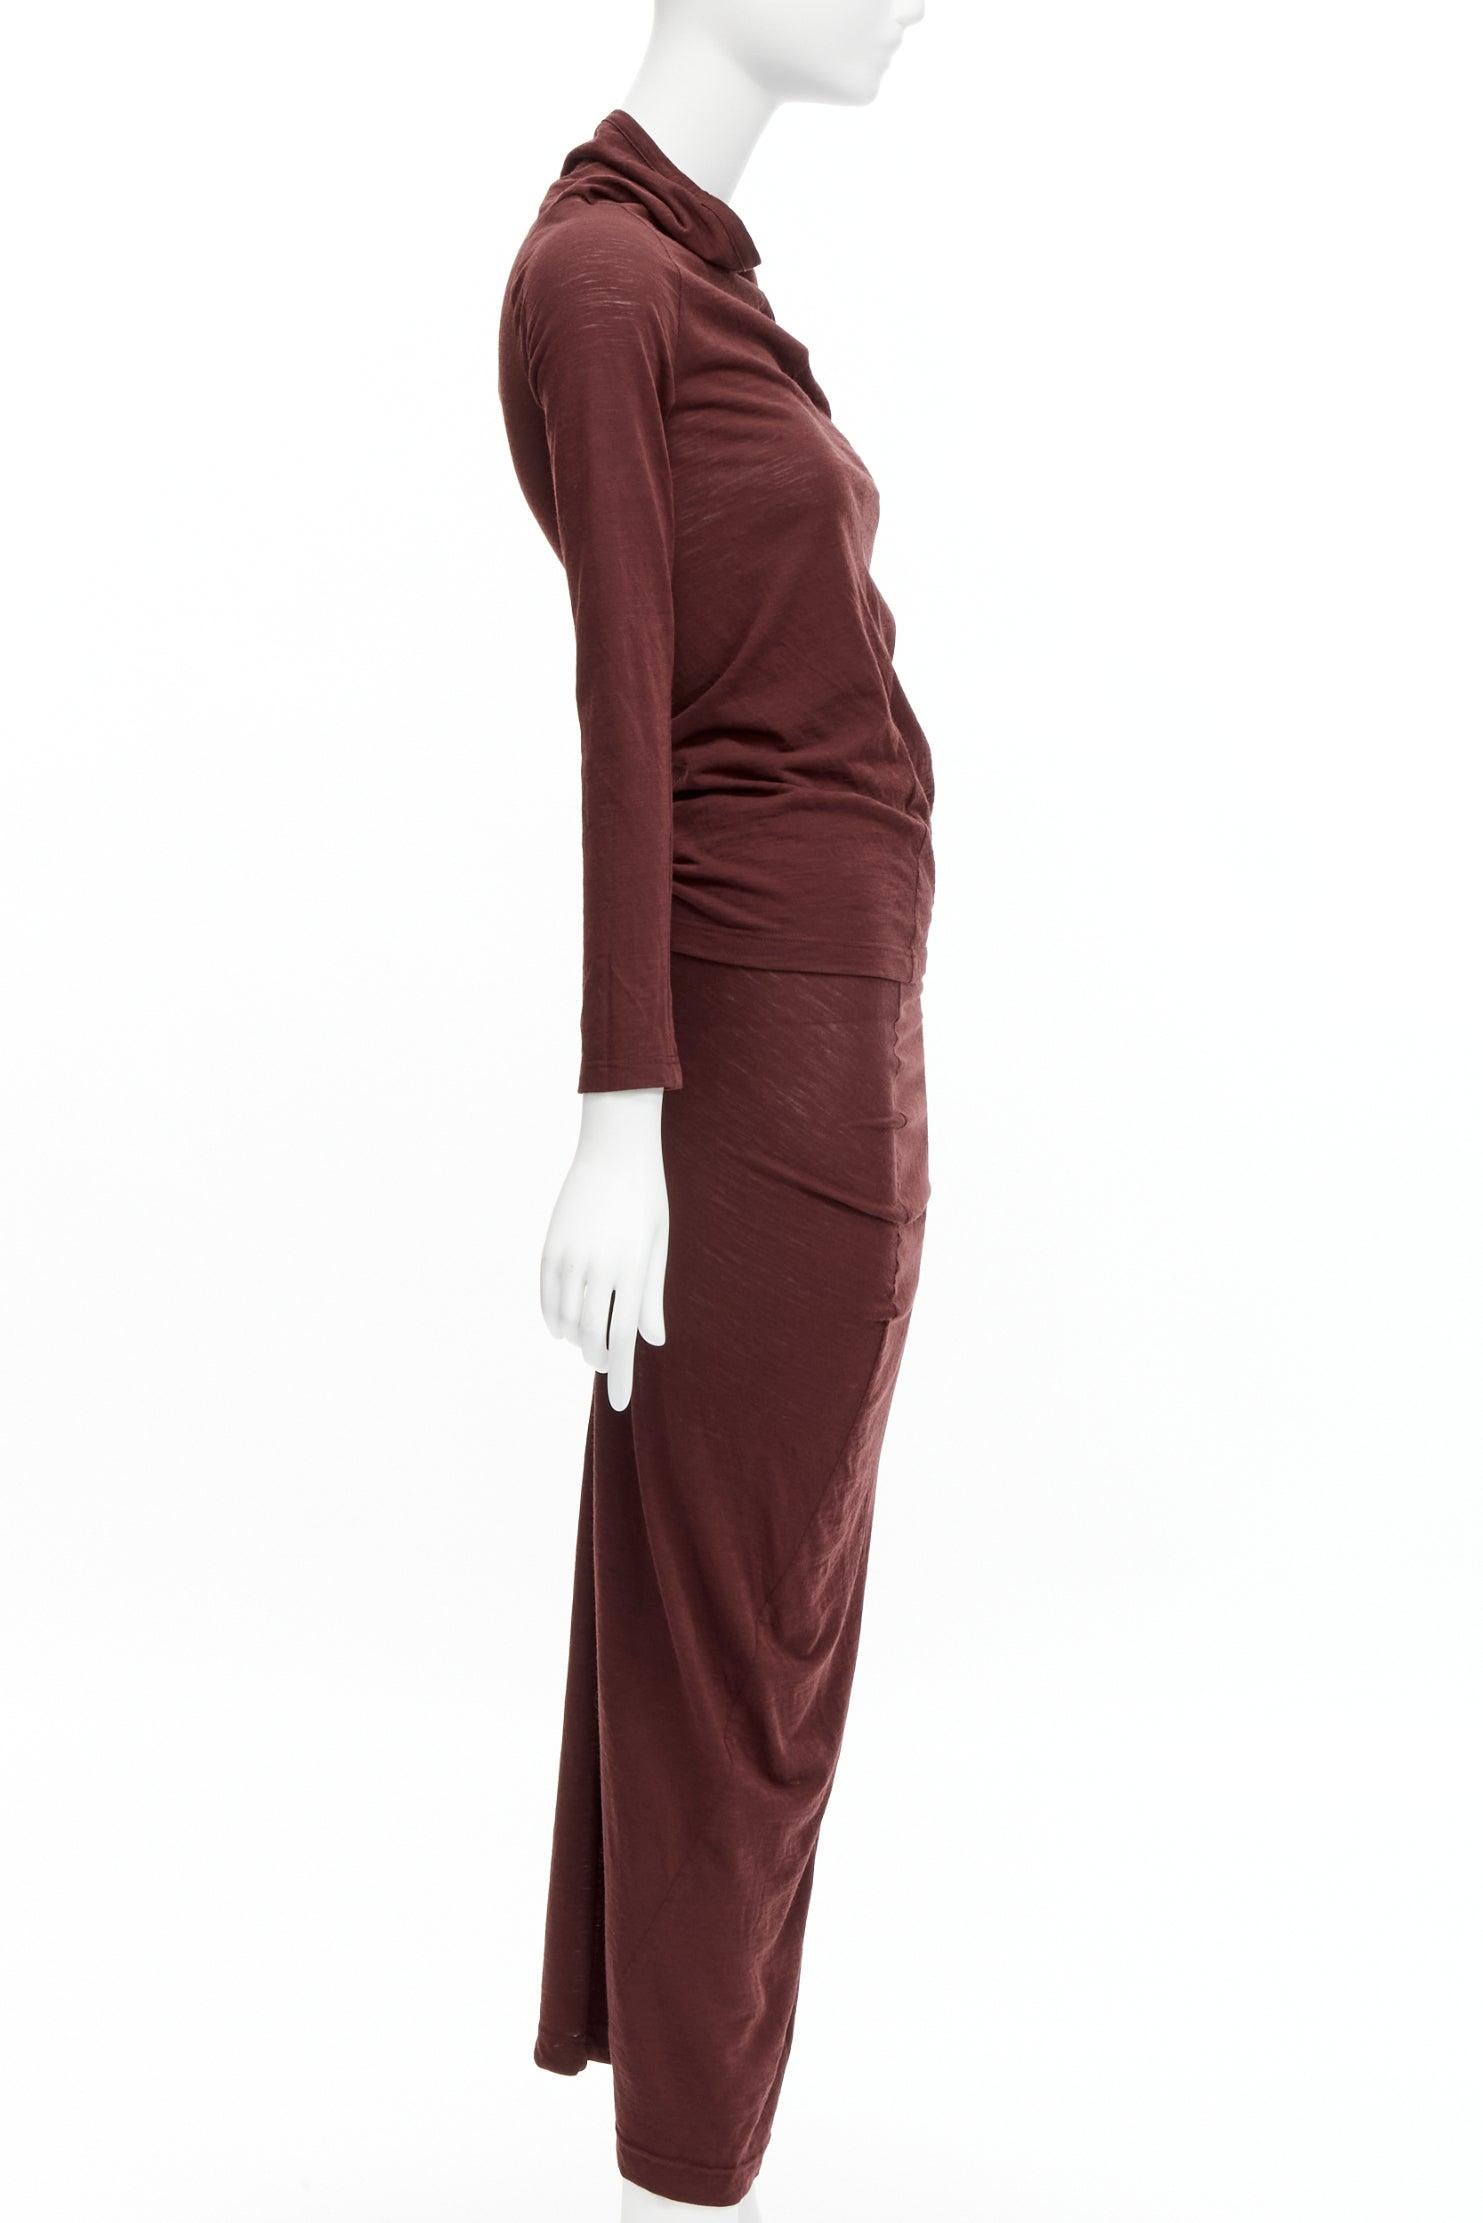 CDG COMME DES GARCONS burgundy brown bias cut stretch top midi skirt set S Pour femmes en vente